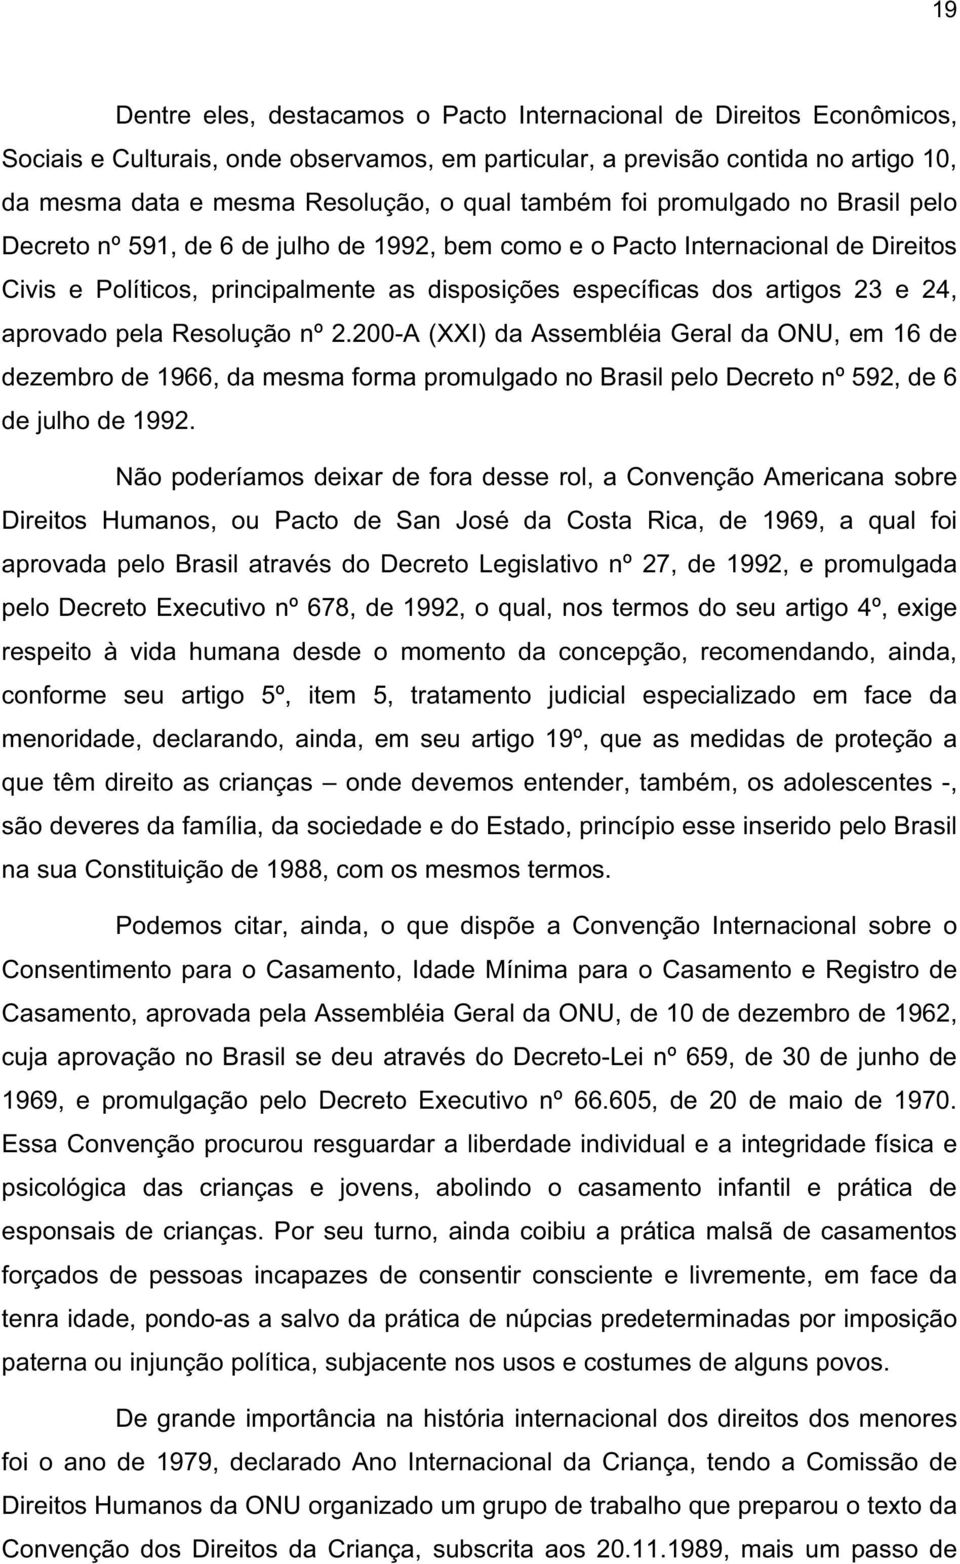 24, aprovado pela Resolução nº 2.200-A (XXI) da Assembléia Geral da ONU, em 16 de dezembro de 1966, da mesma forma promulgado no Brasil pelo Decreto nº 592, de 6 de julho de 1992.